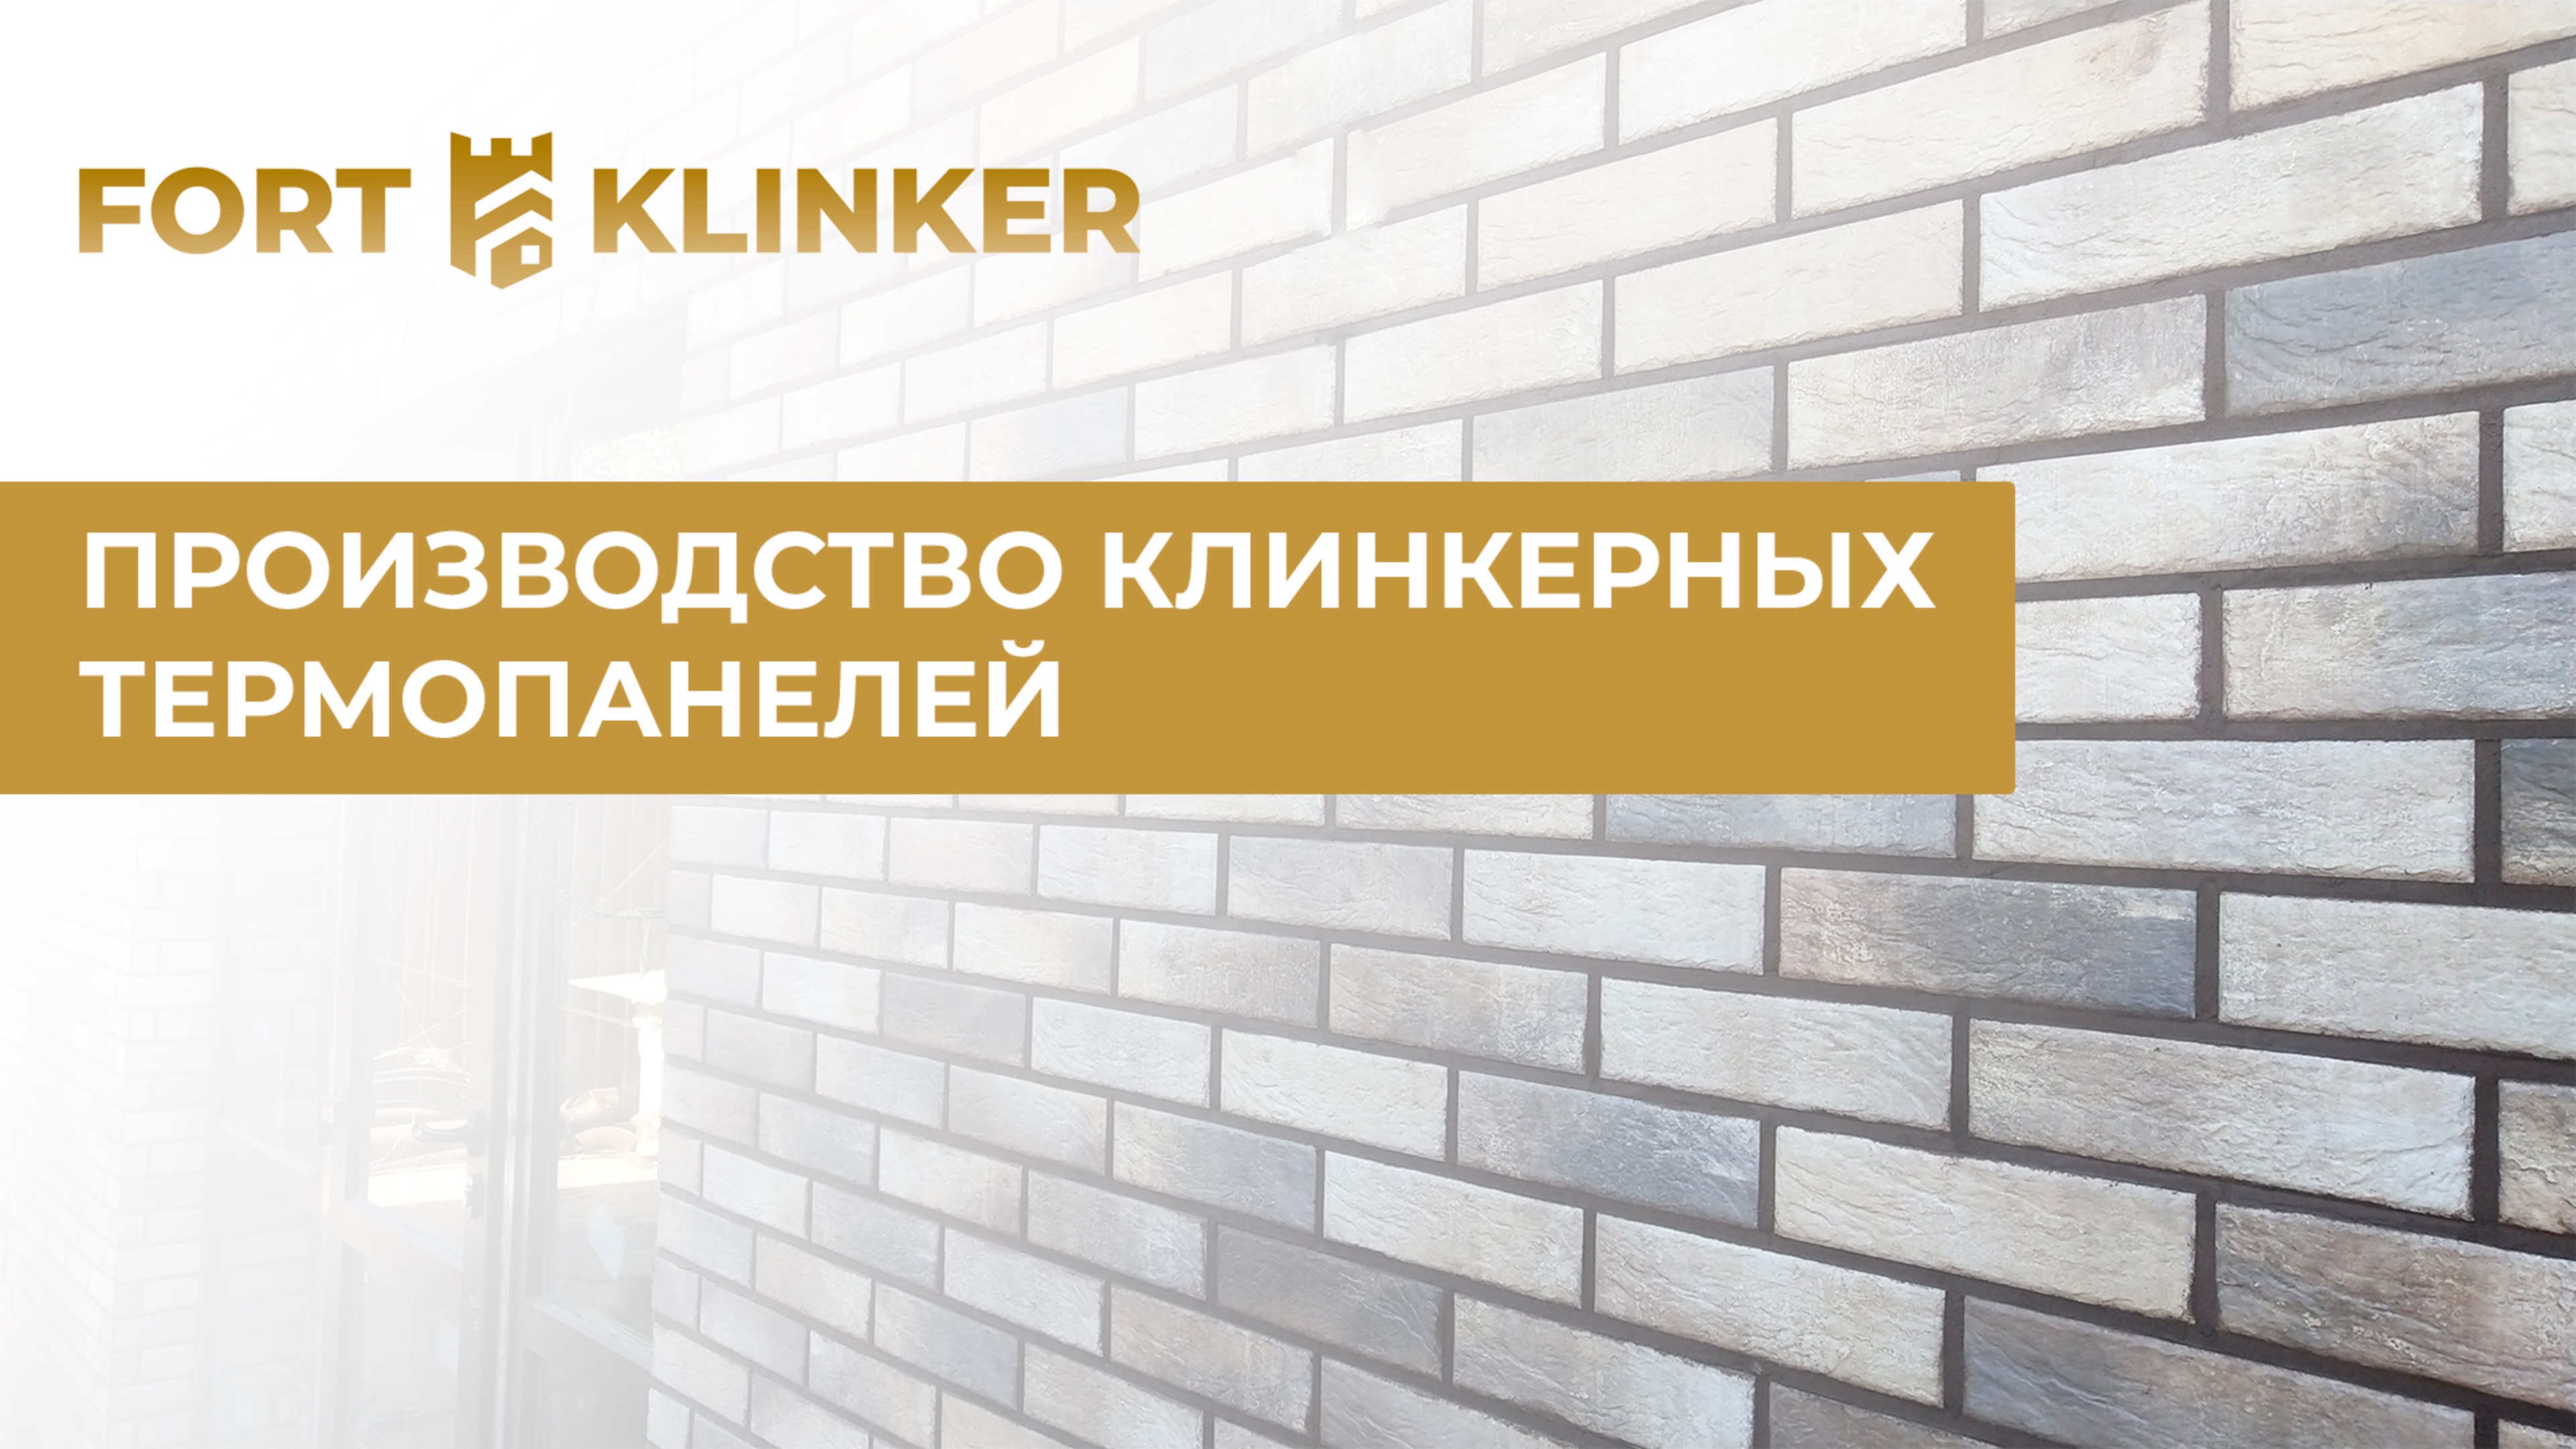 Производство клинкерных термопанелей "FORT-KLINKER"